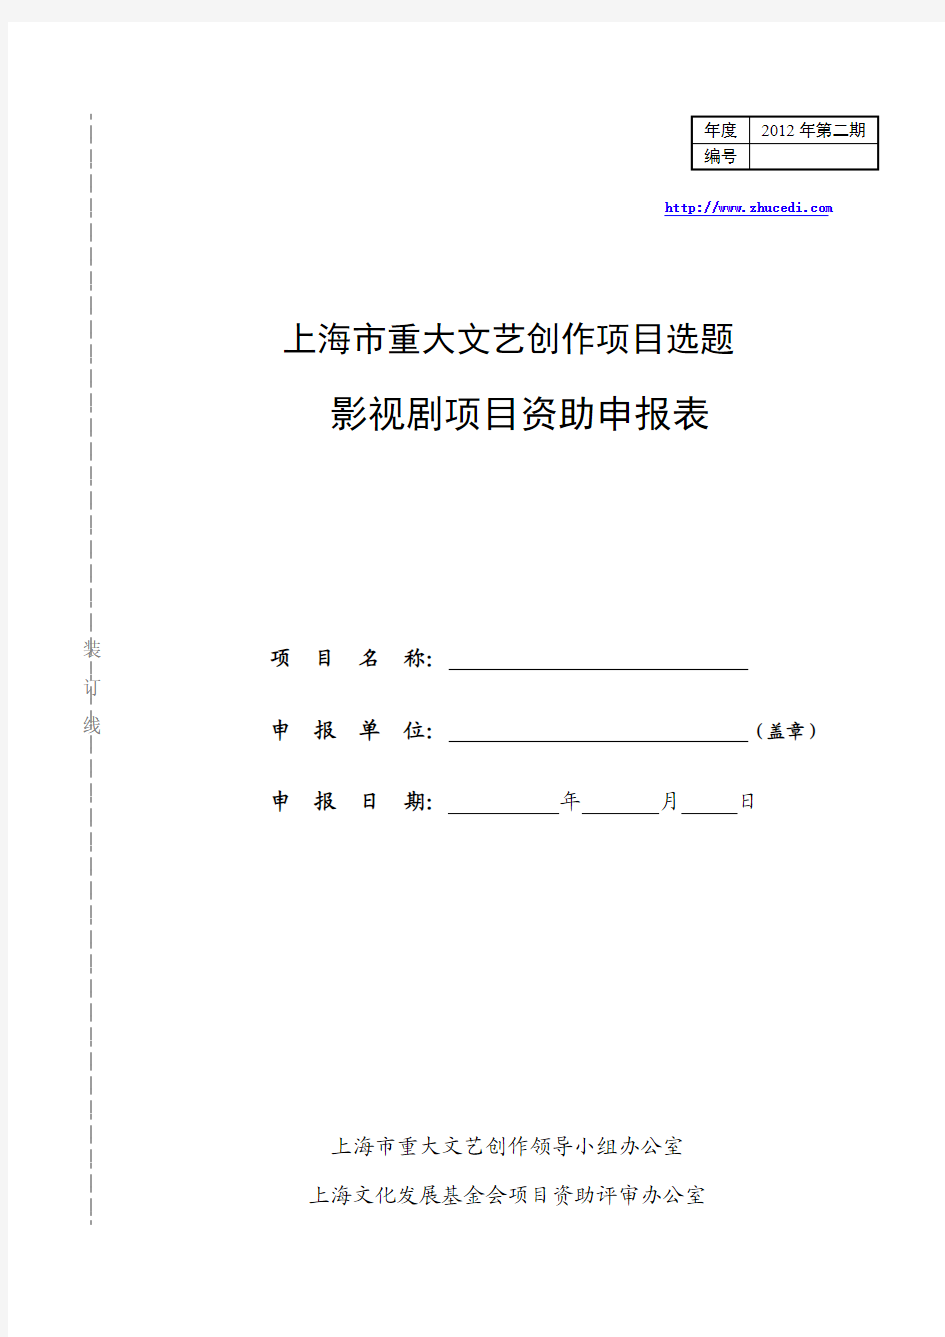 2012-2上海市重大文艺创作项目选题影视剧项目资助申报表